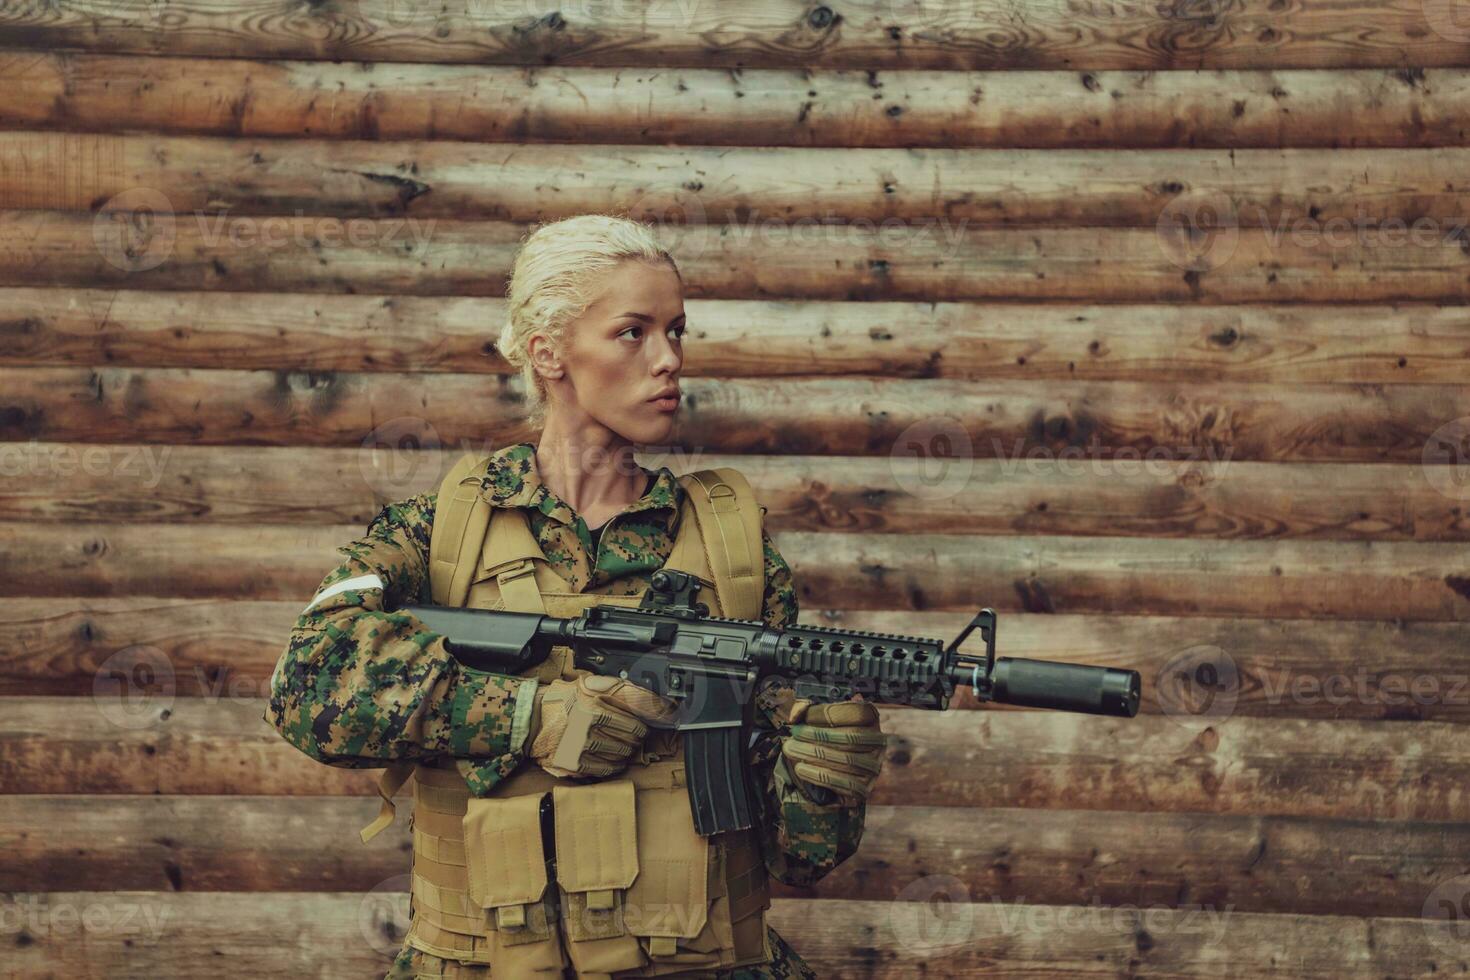 kvinna soldat redo för slåss bär skyddande militär redskap och vapen foto